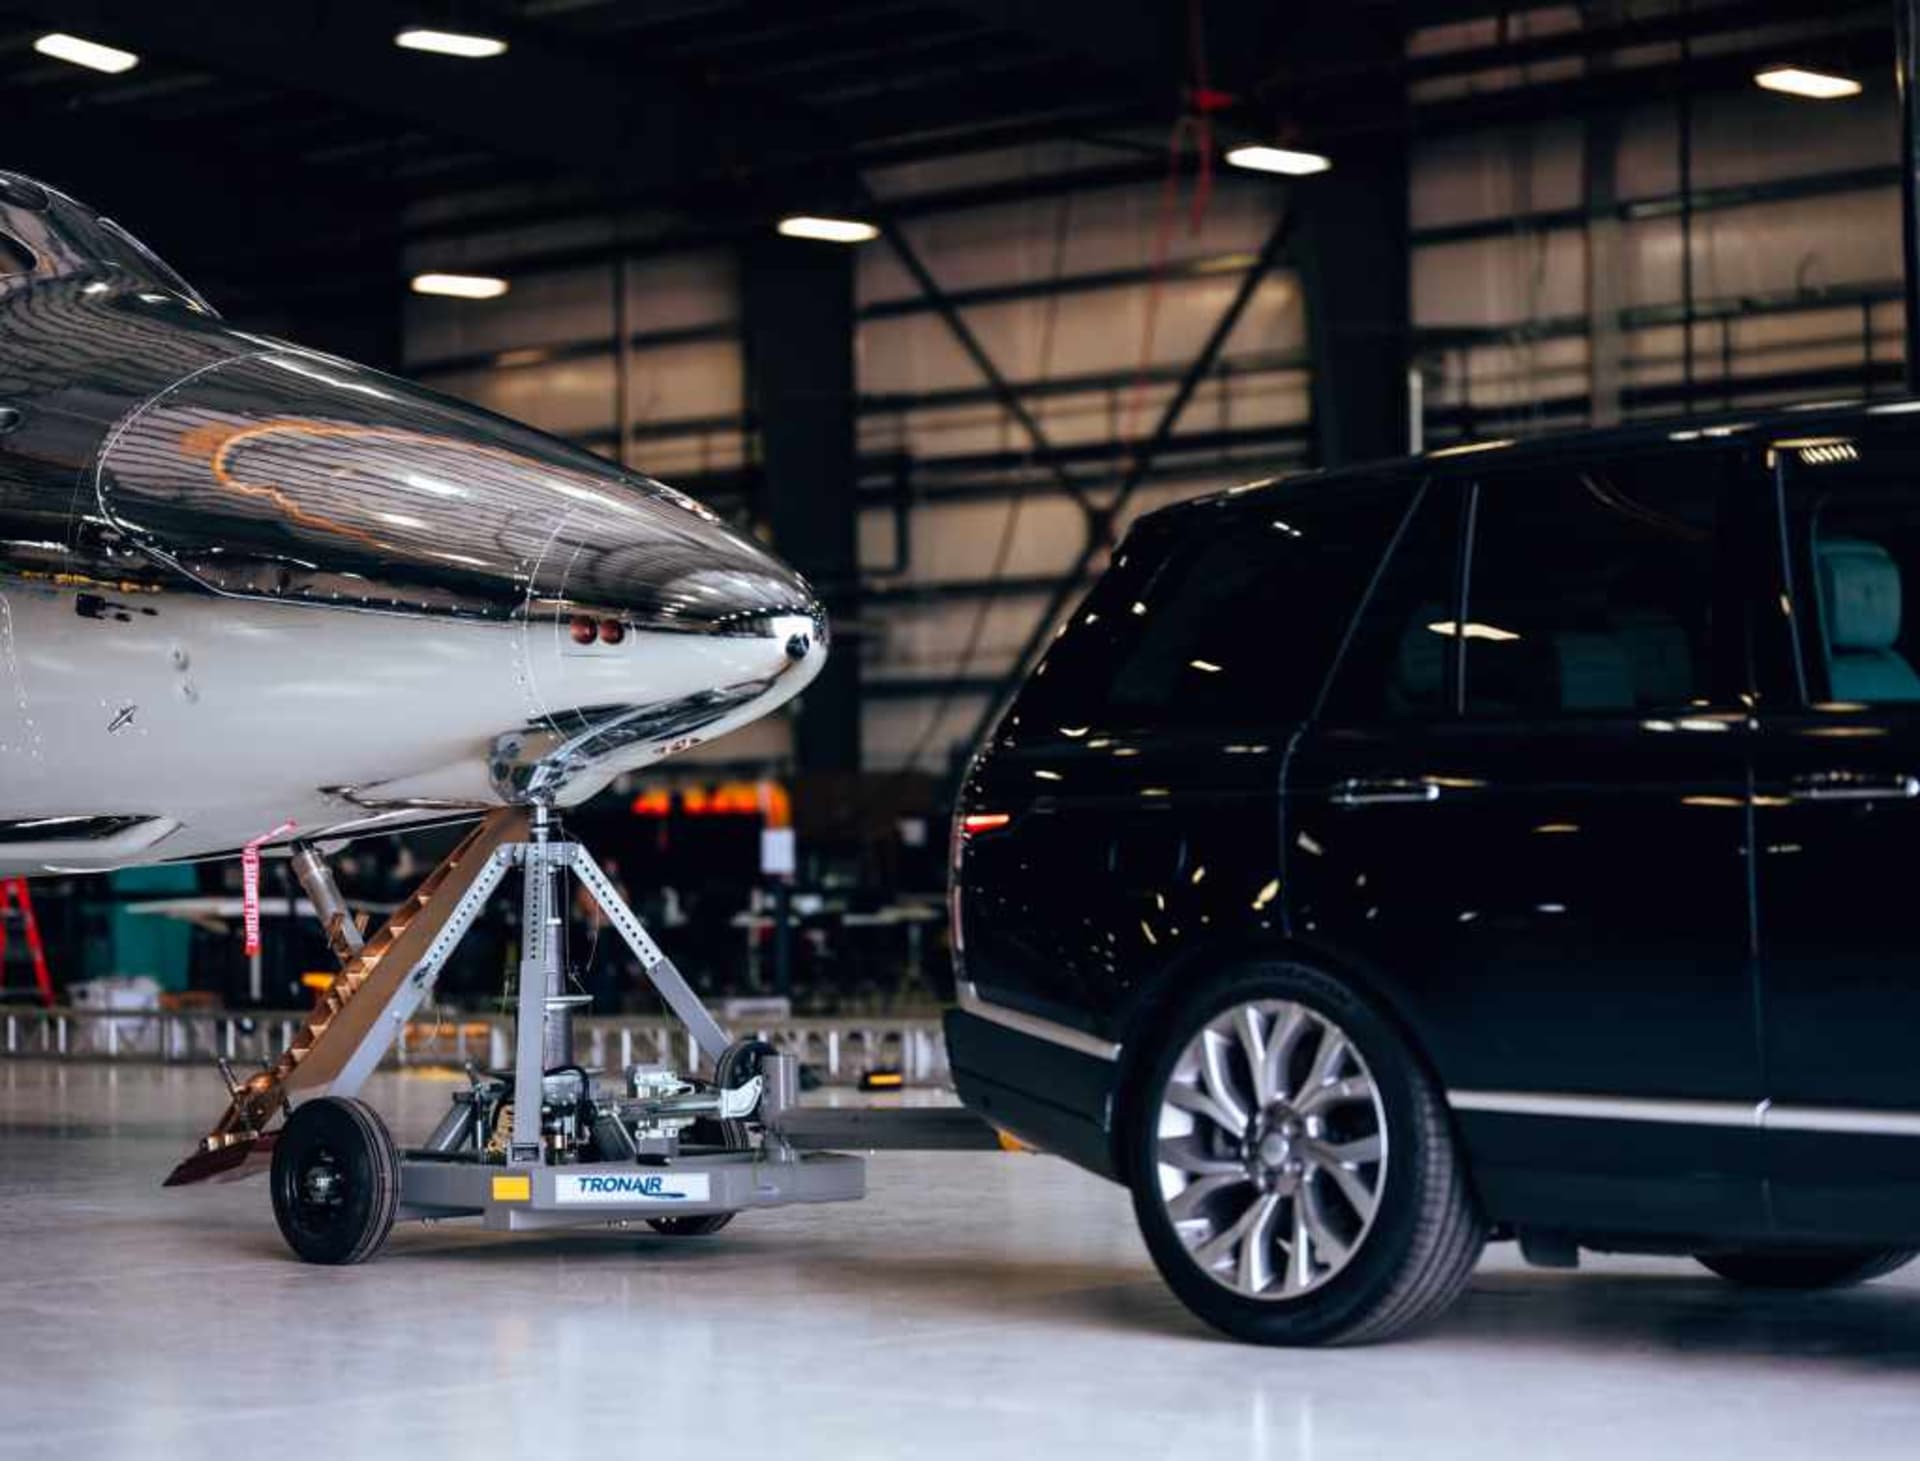 Range Rover za sebou táhne novou generaci vesmírné lodi VSS Imagine.